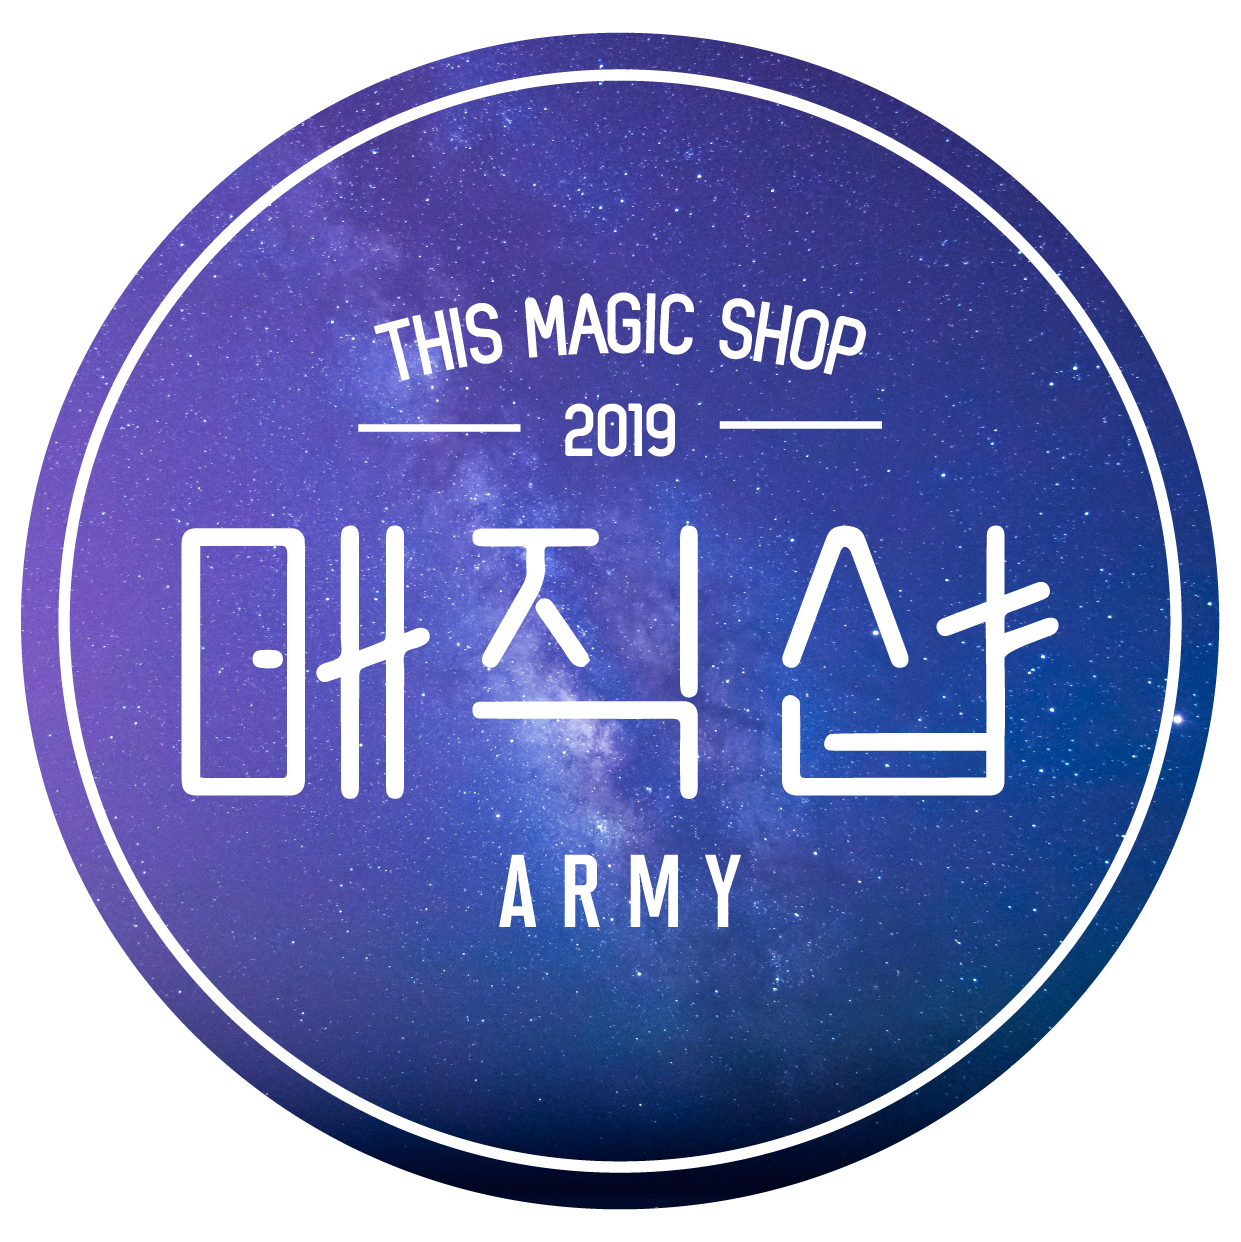 This Magic Shop – ThisMagicShop